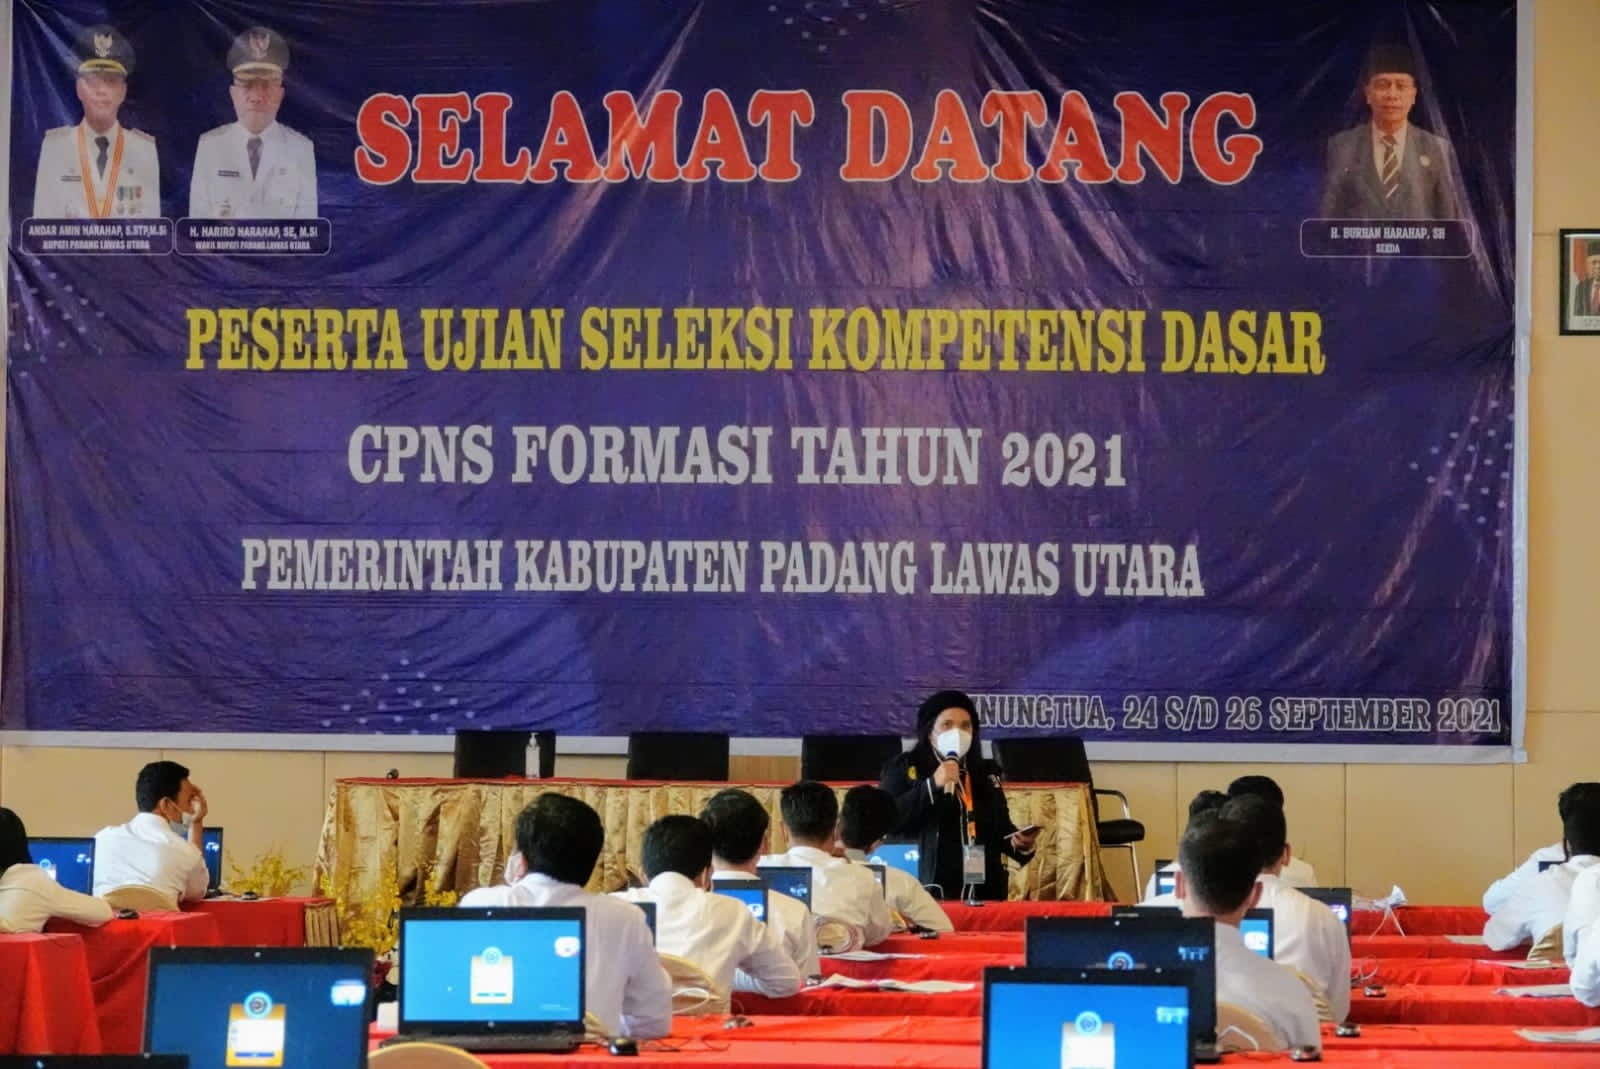 Pengumuman Jadwal dan Tata Tertib Seleksi Kompetensi Dasar CPNS Padang Lawas Utara 